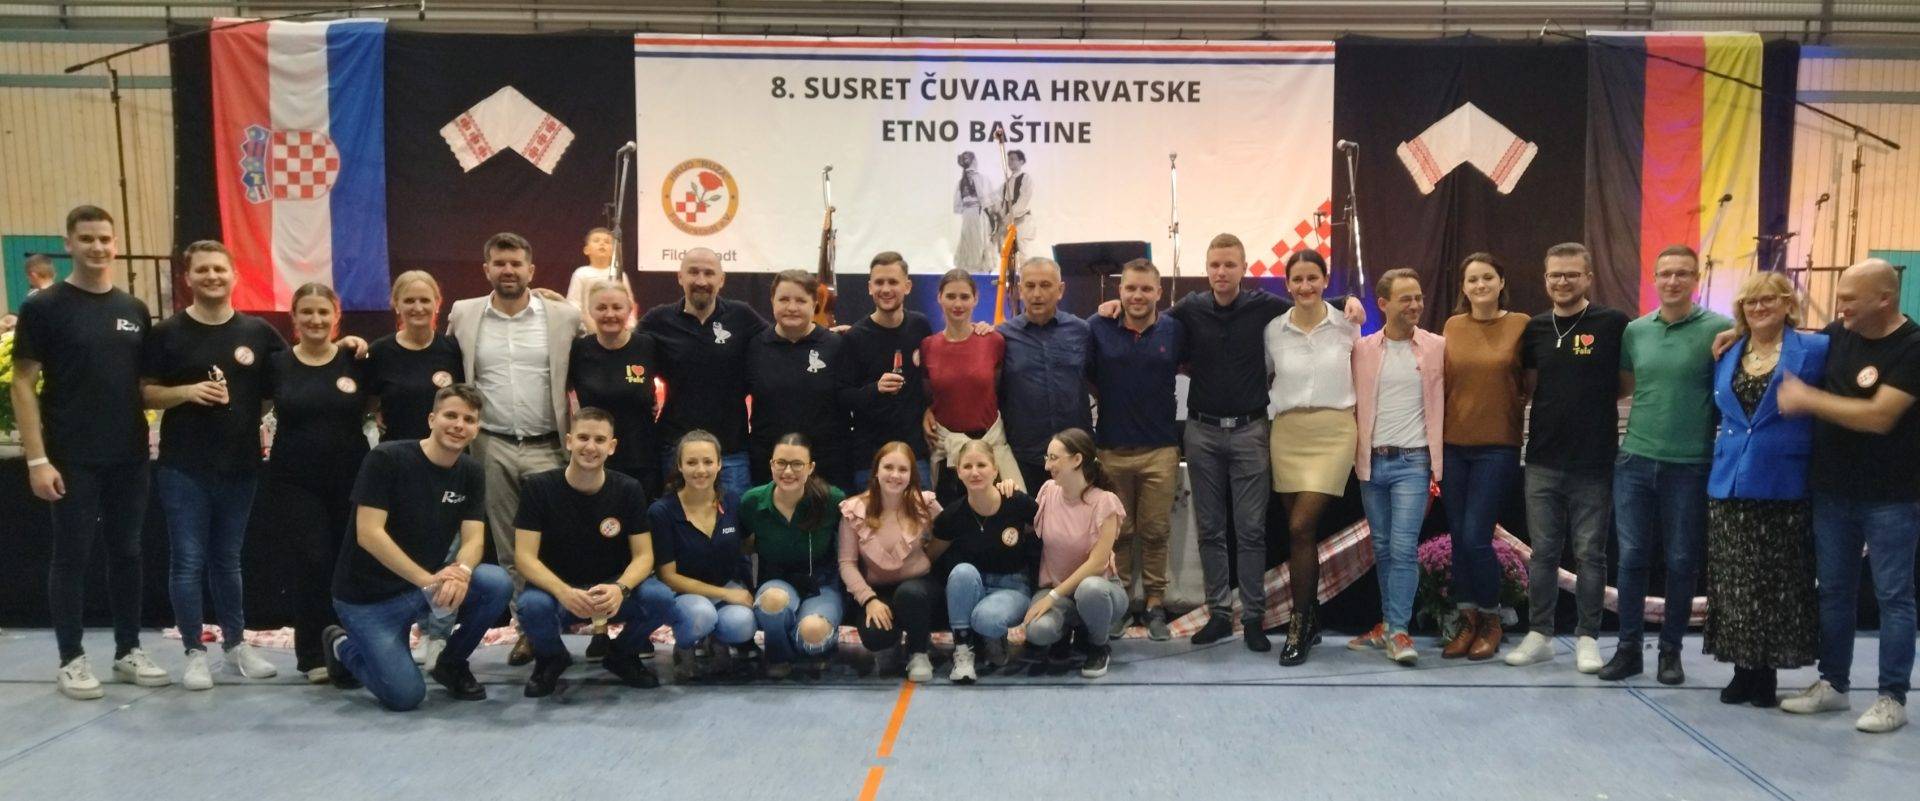 Hrvatsko kulturno-umjetničko društvo 'Ruža' iz njemačkog Filderstadta organiziralo folklornu manifestaciju 'Susret čuvara hrvatske etno baštine' 